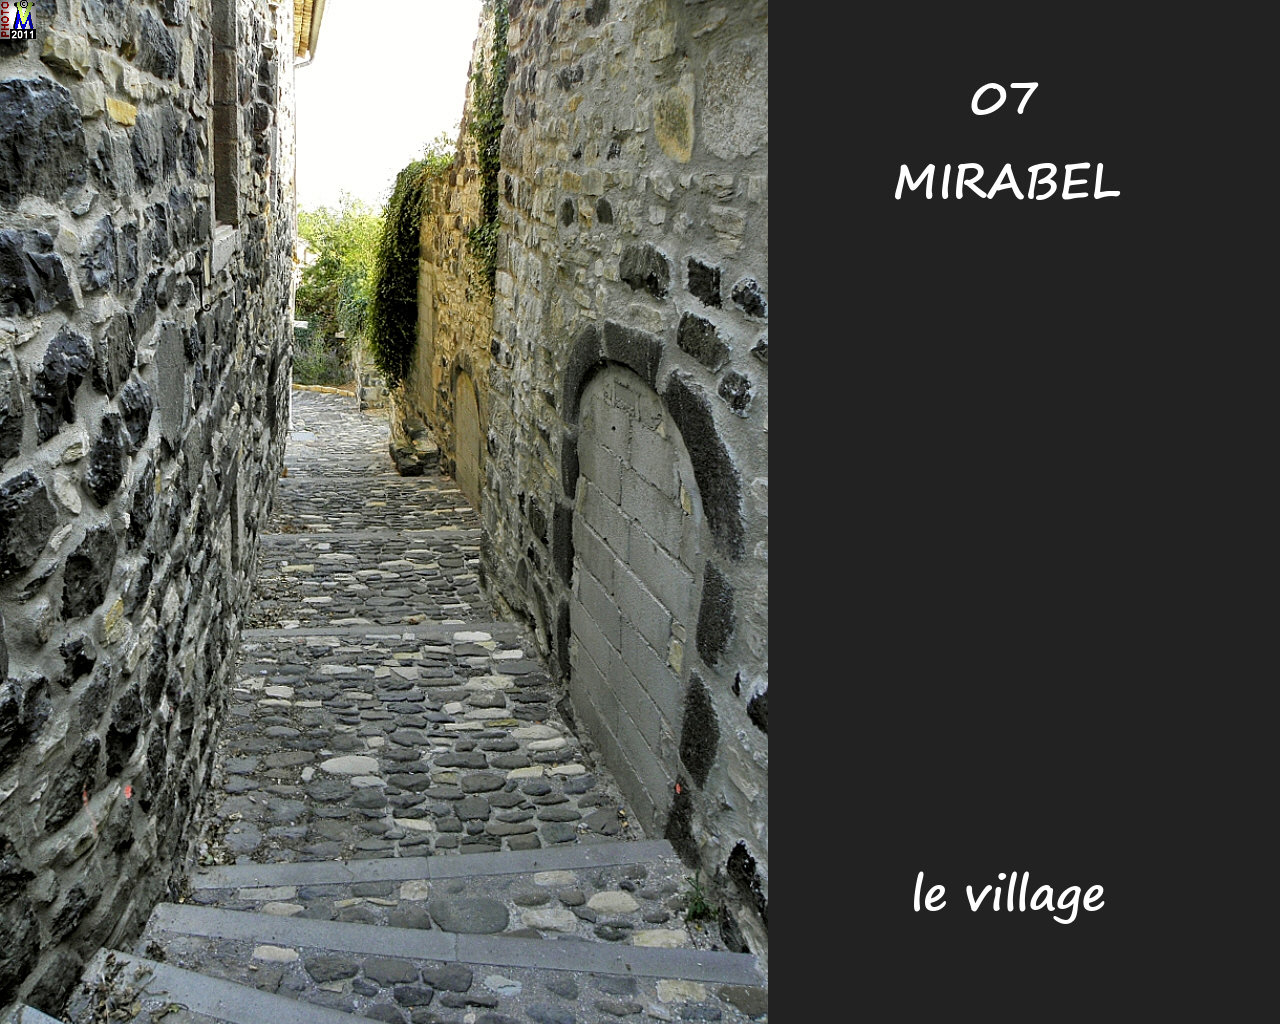 07MIRABEL_village_144.jpg